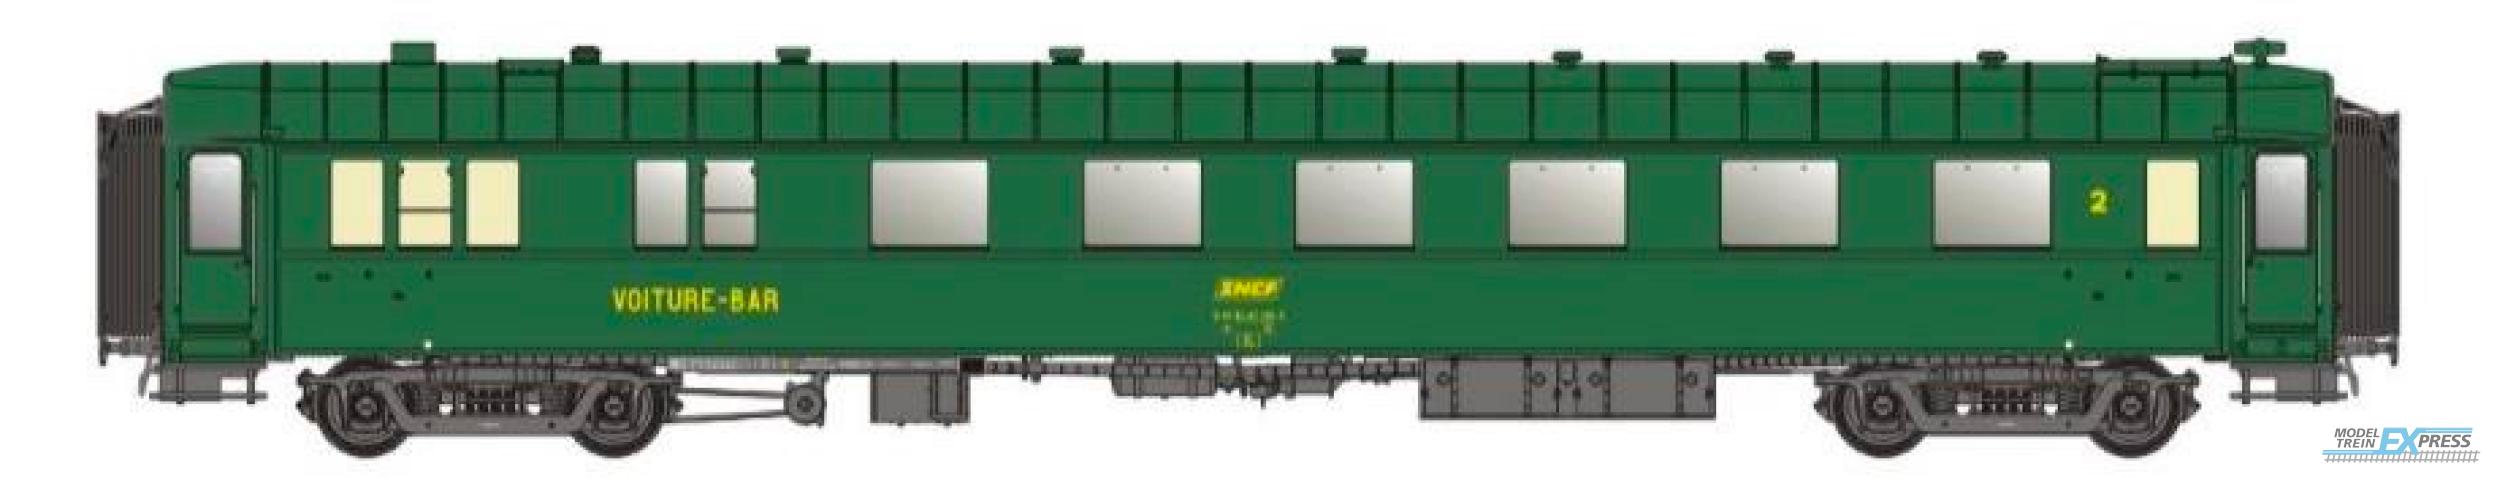 LS Models 40945 OCEM, groen, B3r, onderstel grijs, dak en uiteinden groen, / Ep. IVA / SNCF / HO / DC / 1 P.